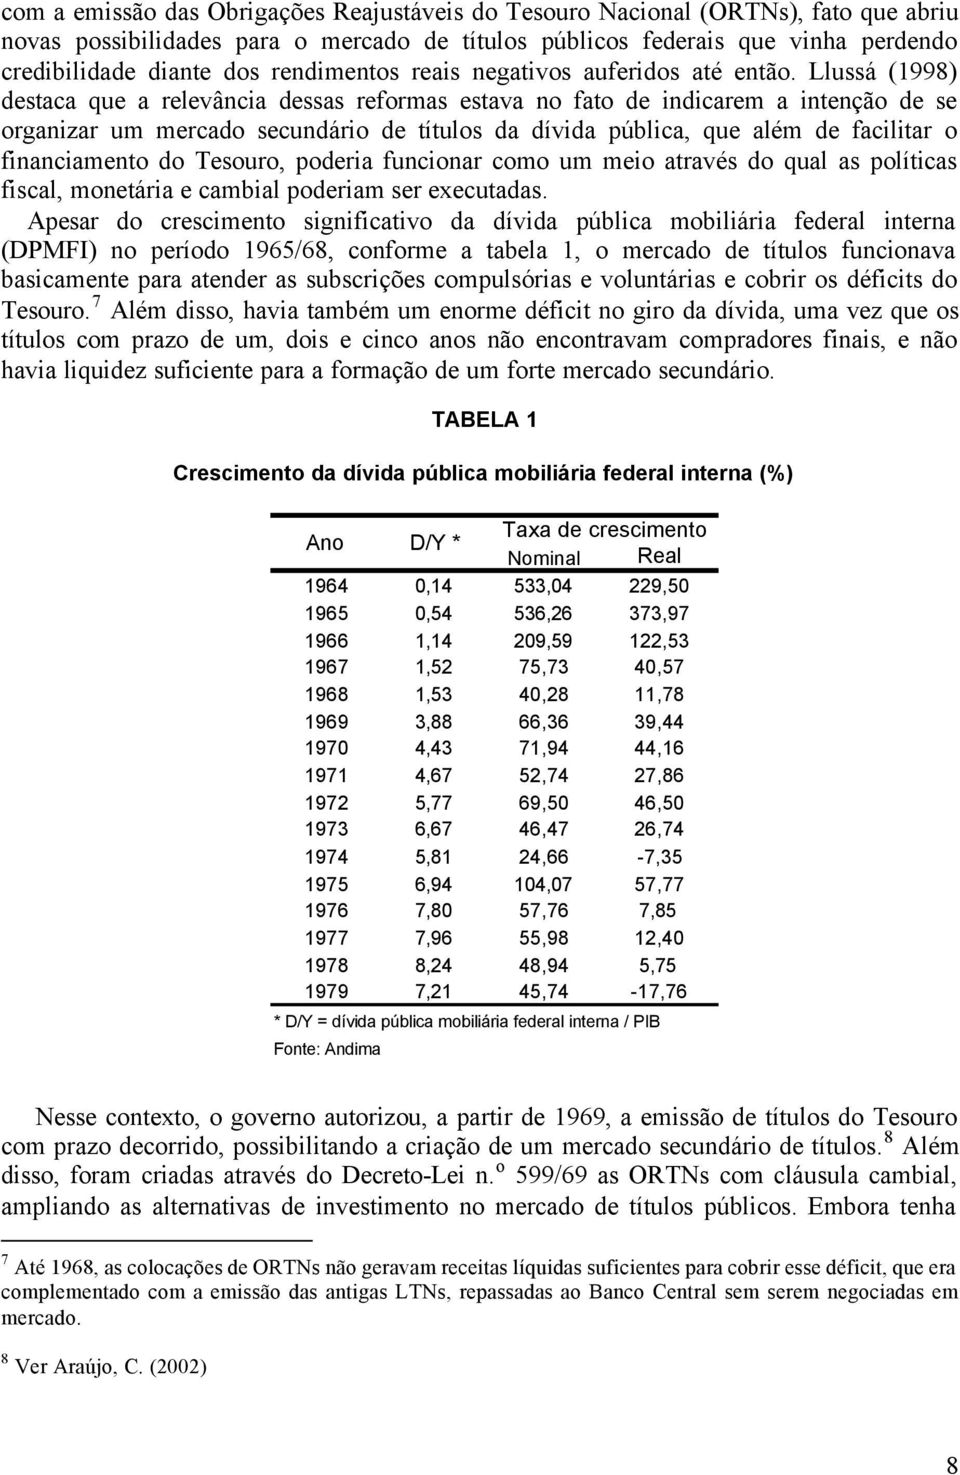 Llussá (1998) destaca que a relevância dessas reformas estava no fato de indicarem a intenção de se organizar um mercado secundário de títulos da dívida pública, que além de facilitar o financiamento